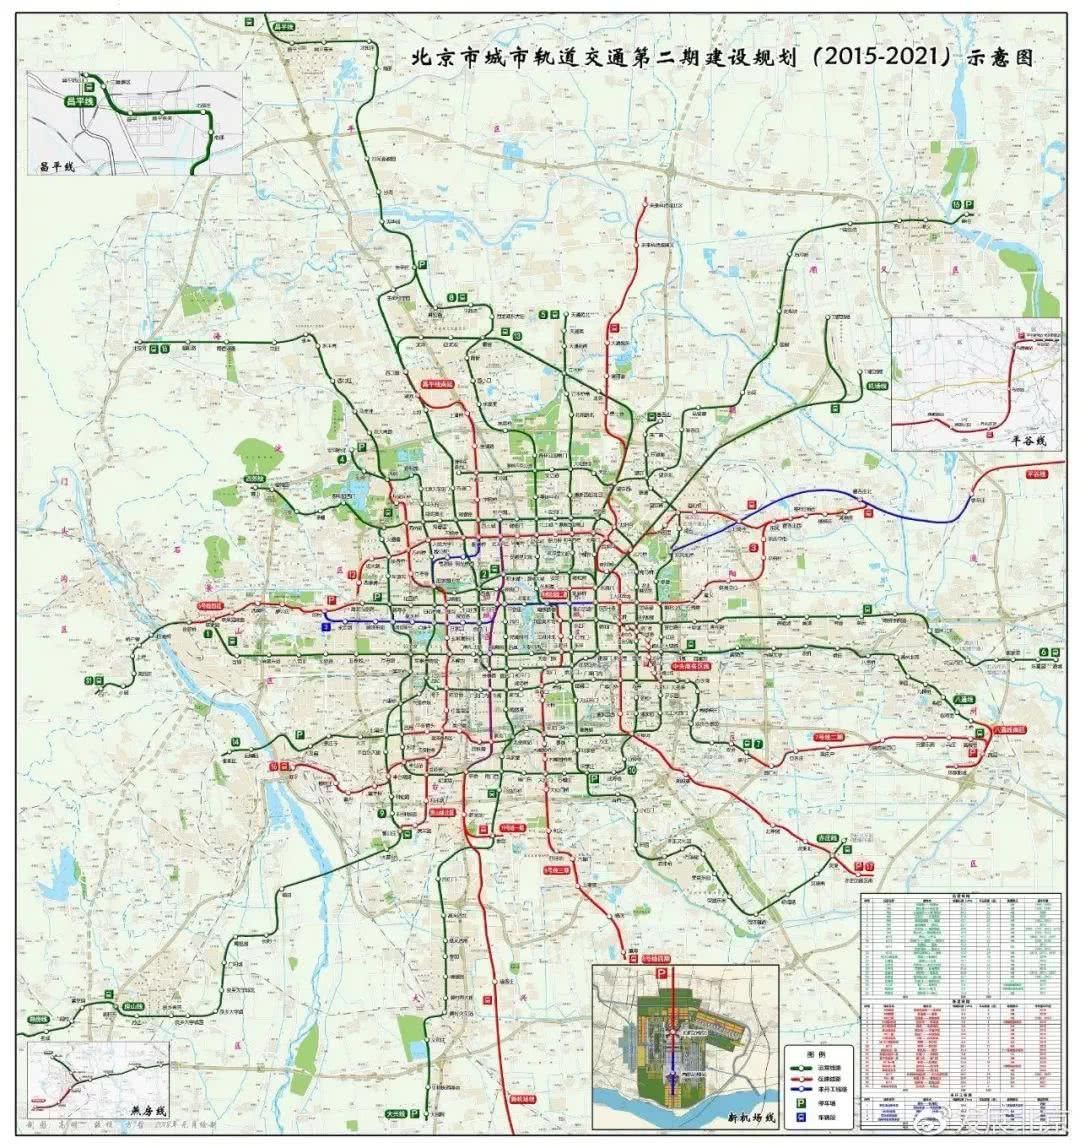 北京城里的那点事:北京2021年地铁规划全图公布!_【快资讯】